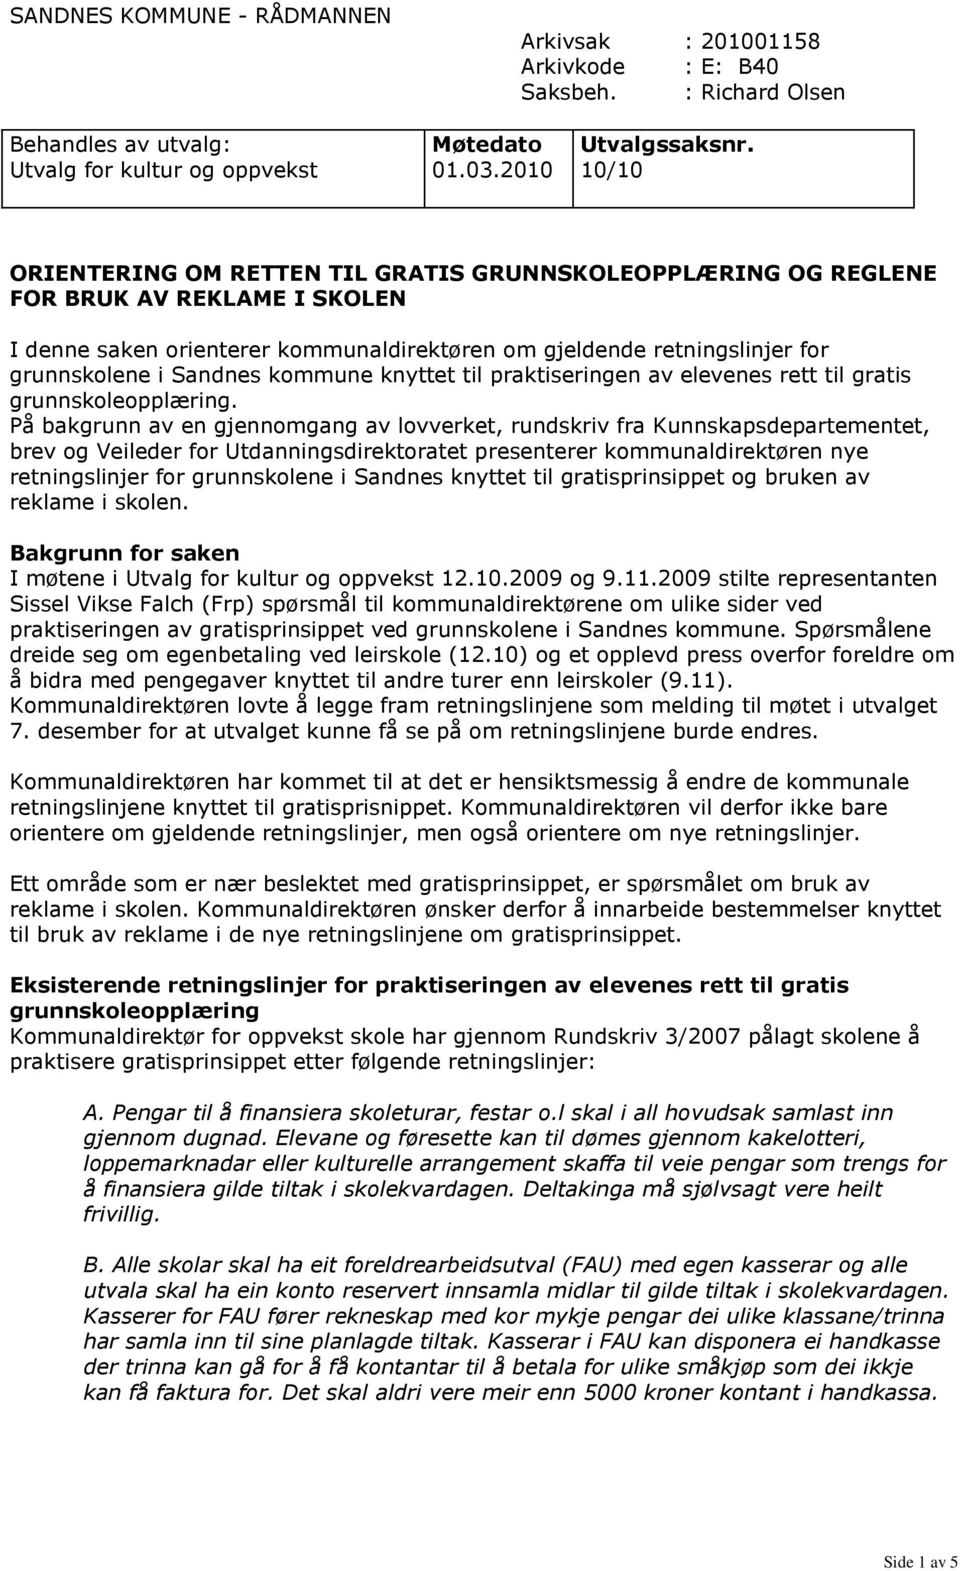 Sandnes kommune knyttet til praktiseringen av elevenes rett til gratis grunnskoleopplæring.